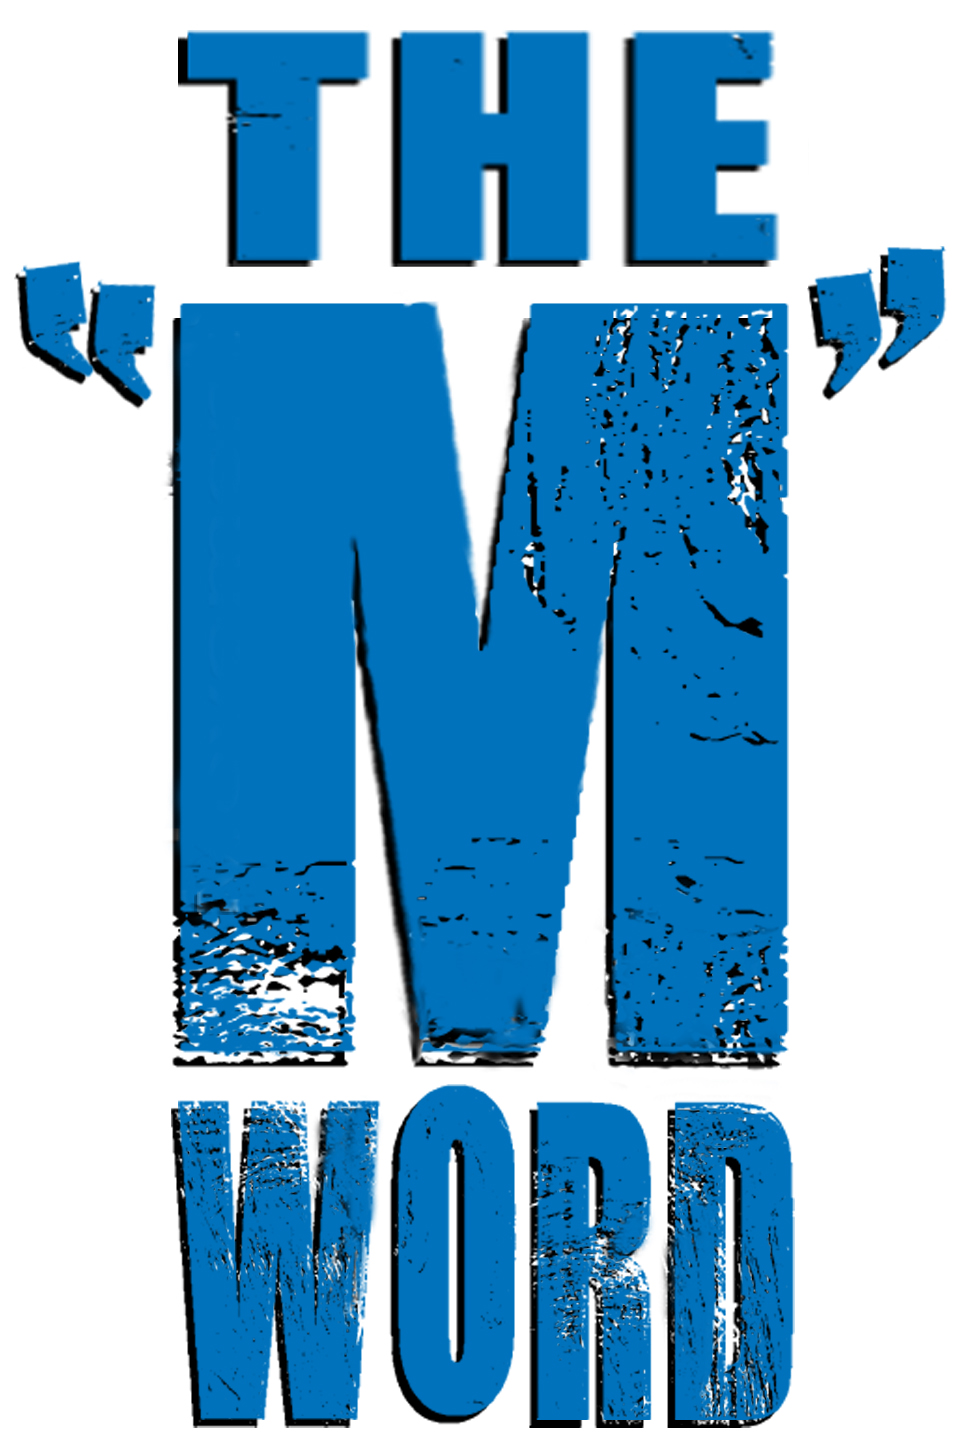 M WORD — UNDERSTANDING DWARFISM